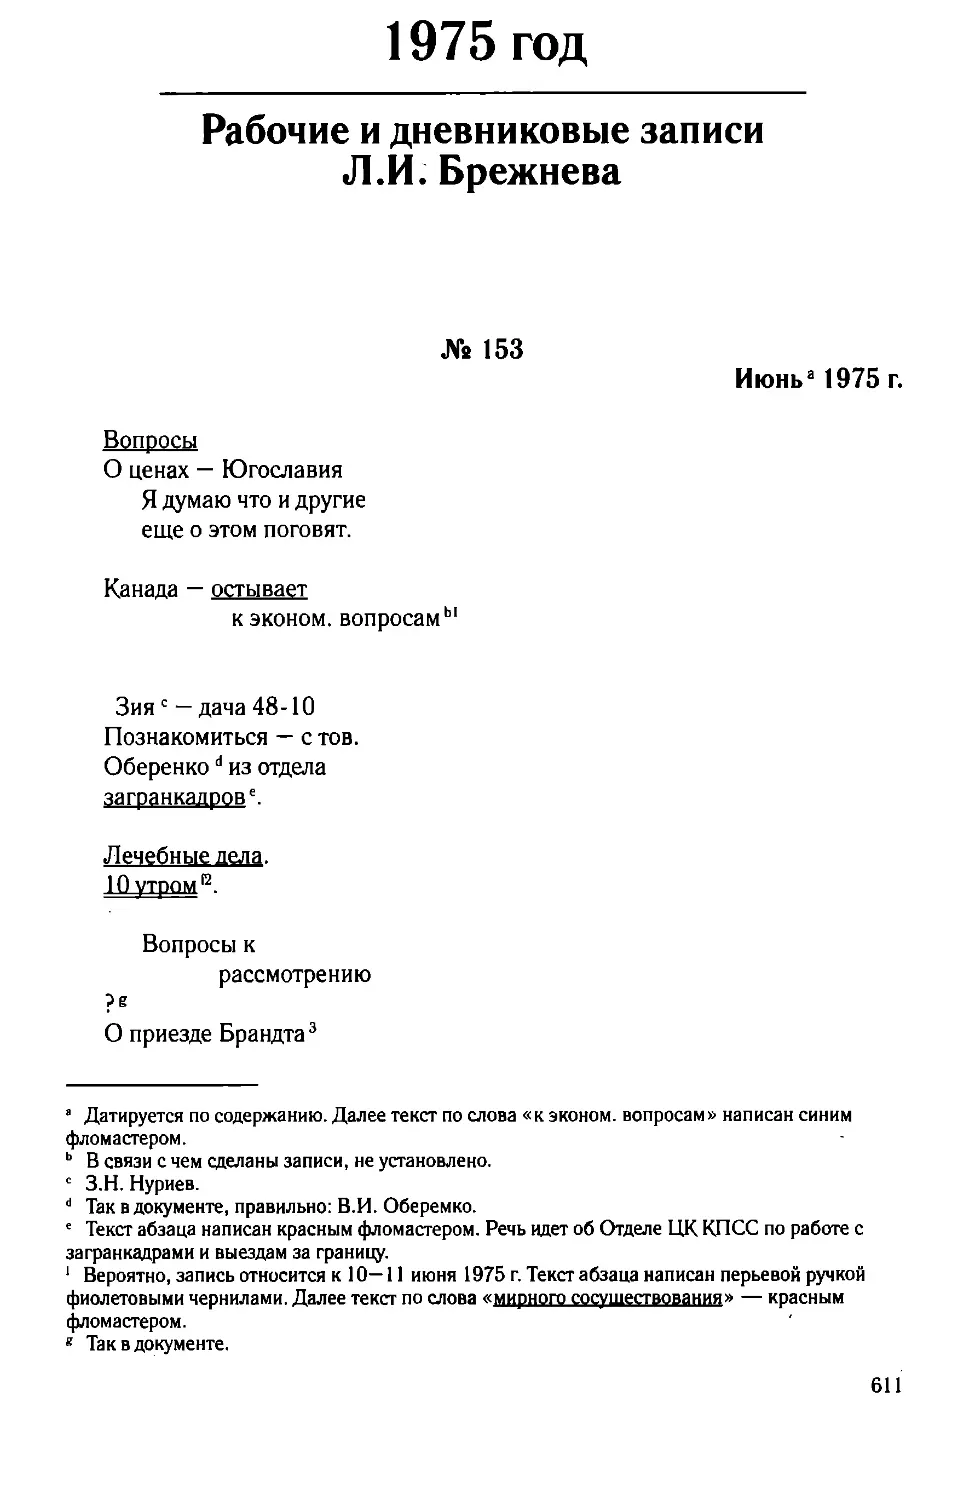 Рабочие и дневниковые записи Л.И. Брежнева. 1975 год